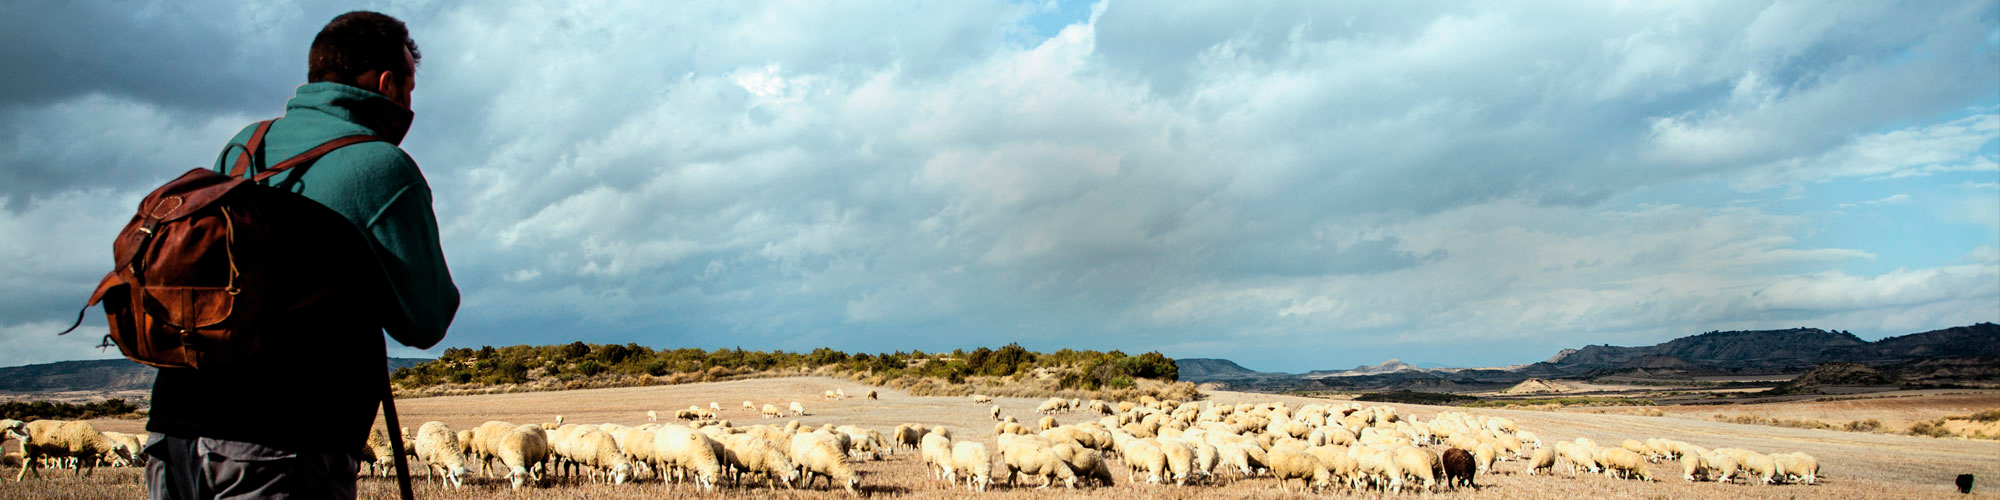 Un pastor observa el rebaño de ovejas y corderos mientras pastan en el campo